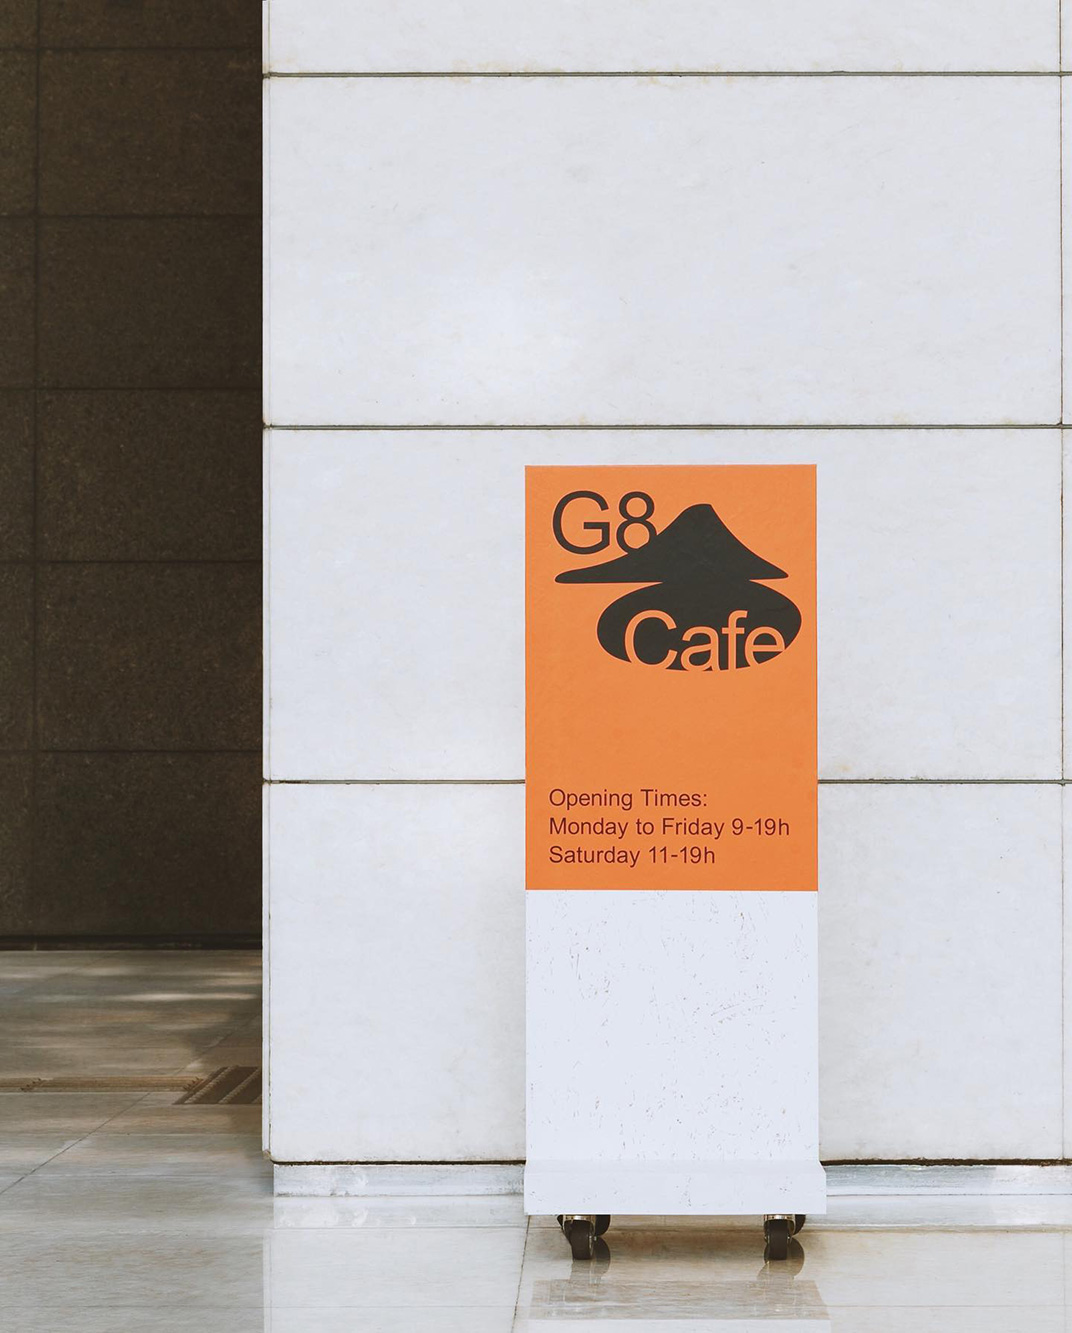 日本画廊里的咖啡馆CAFE G8 川上惠莉子 餐厅LOGO VI空间设计 全球餐饮研究所 视觉餐饮 深圳 武汉 杭州 上海 广州 北京